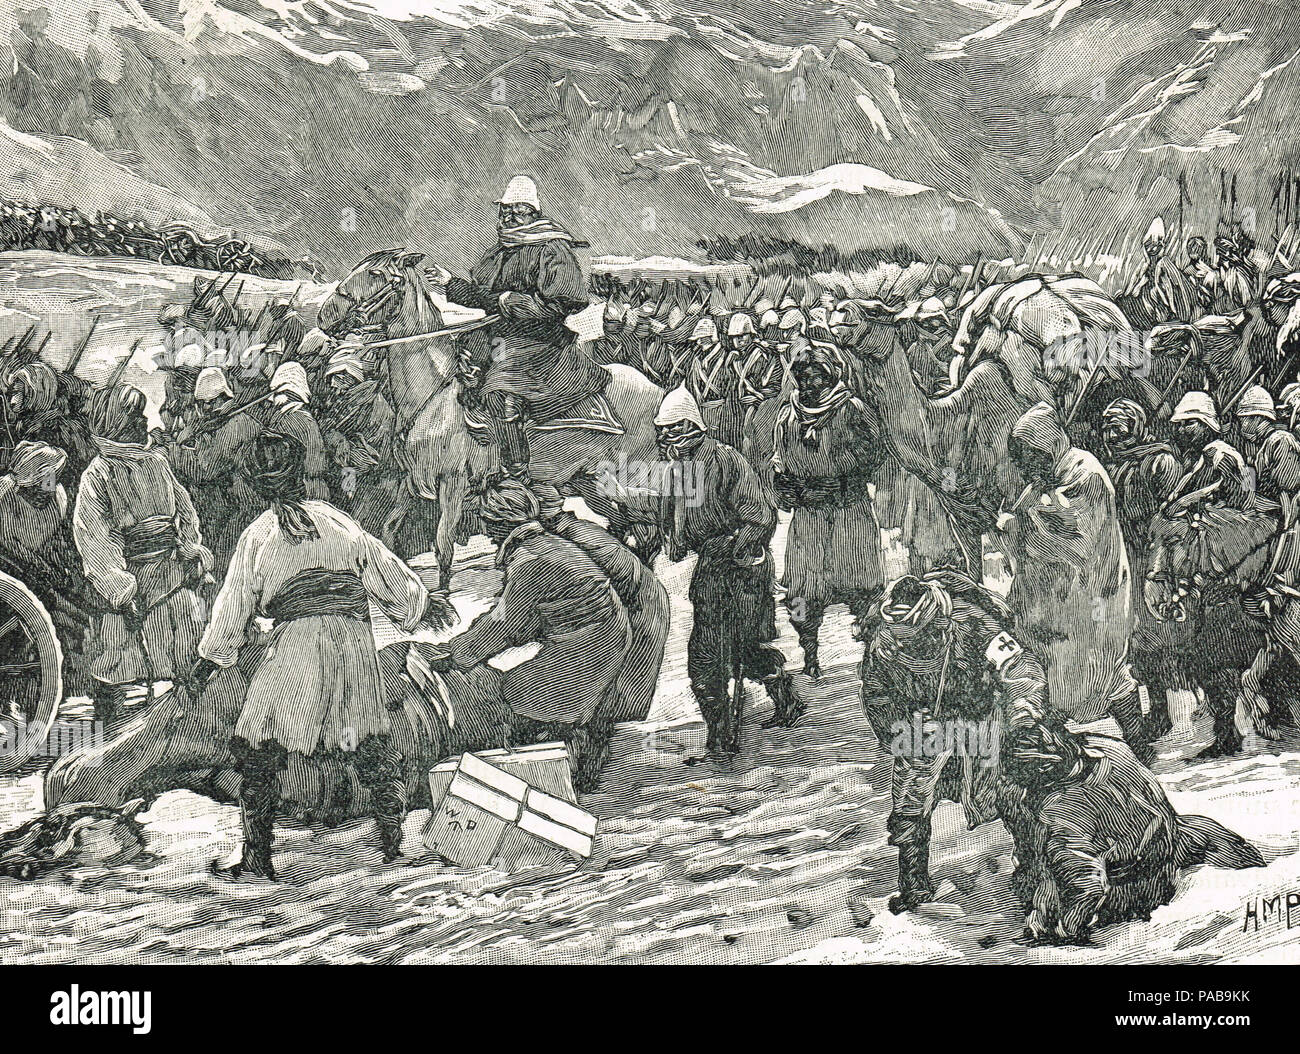 Les Forces britanniques traversent la Bolan Pass en 1879. Une réaction à l'empiétement russe sur l'Afghanistan, un état tampon au nord-ouest de l'Inde sous domination britannique Banque D'Images